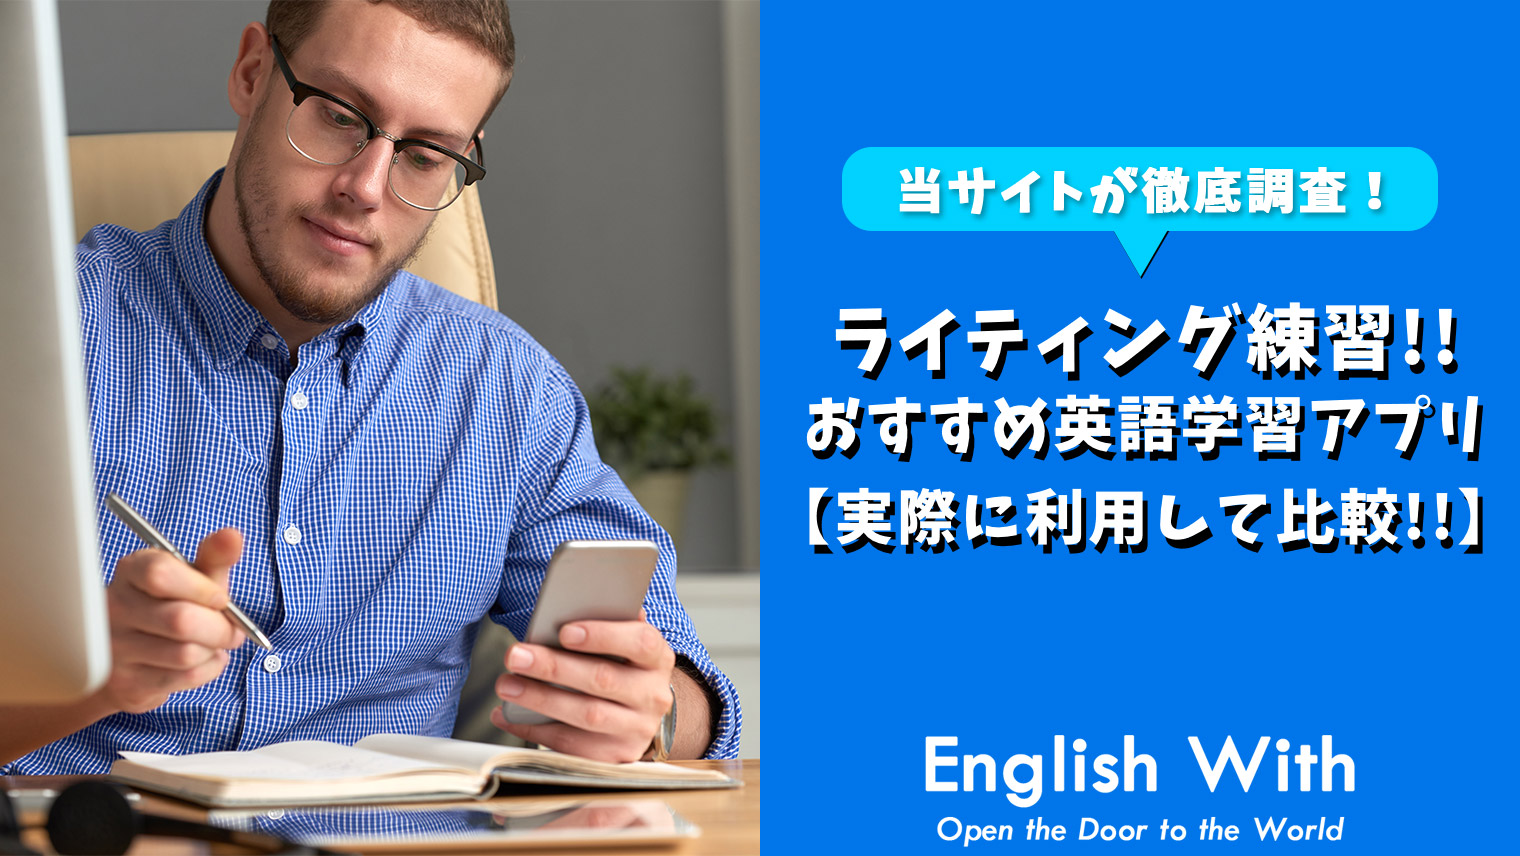 ライティング力を身につける 使いやすい学習学習アプリを紹介 6選 おすすめ英会話 英語学習の比較 ランキング English With